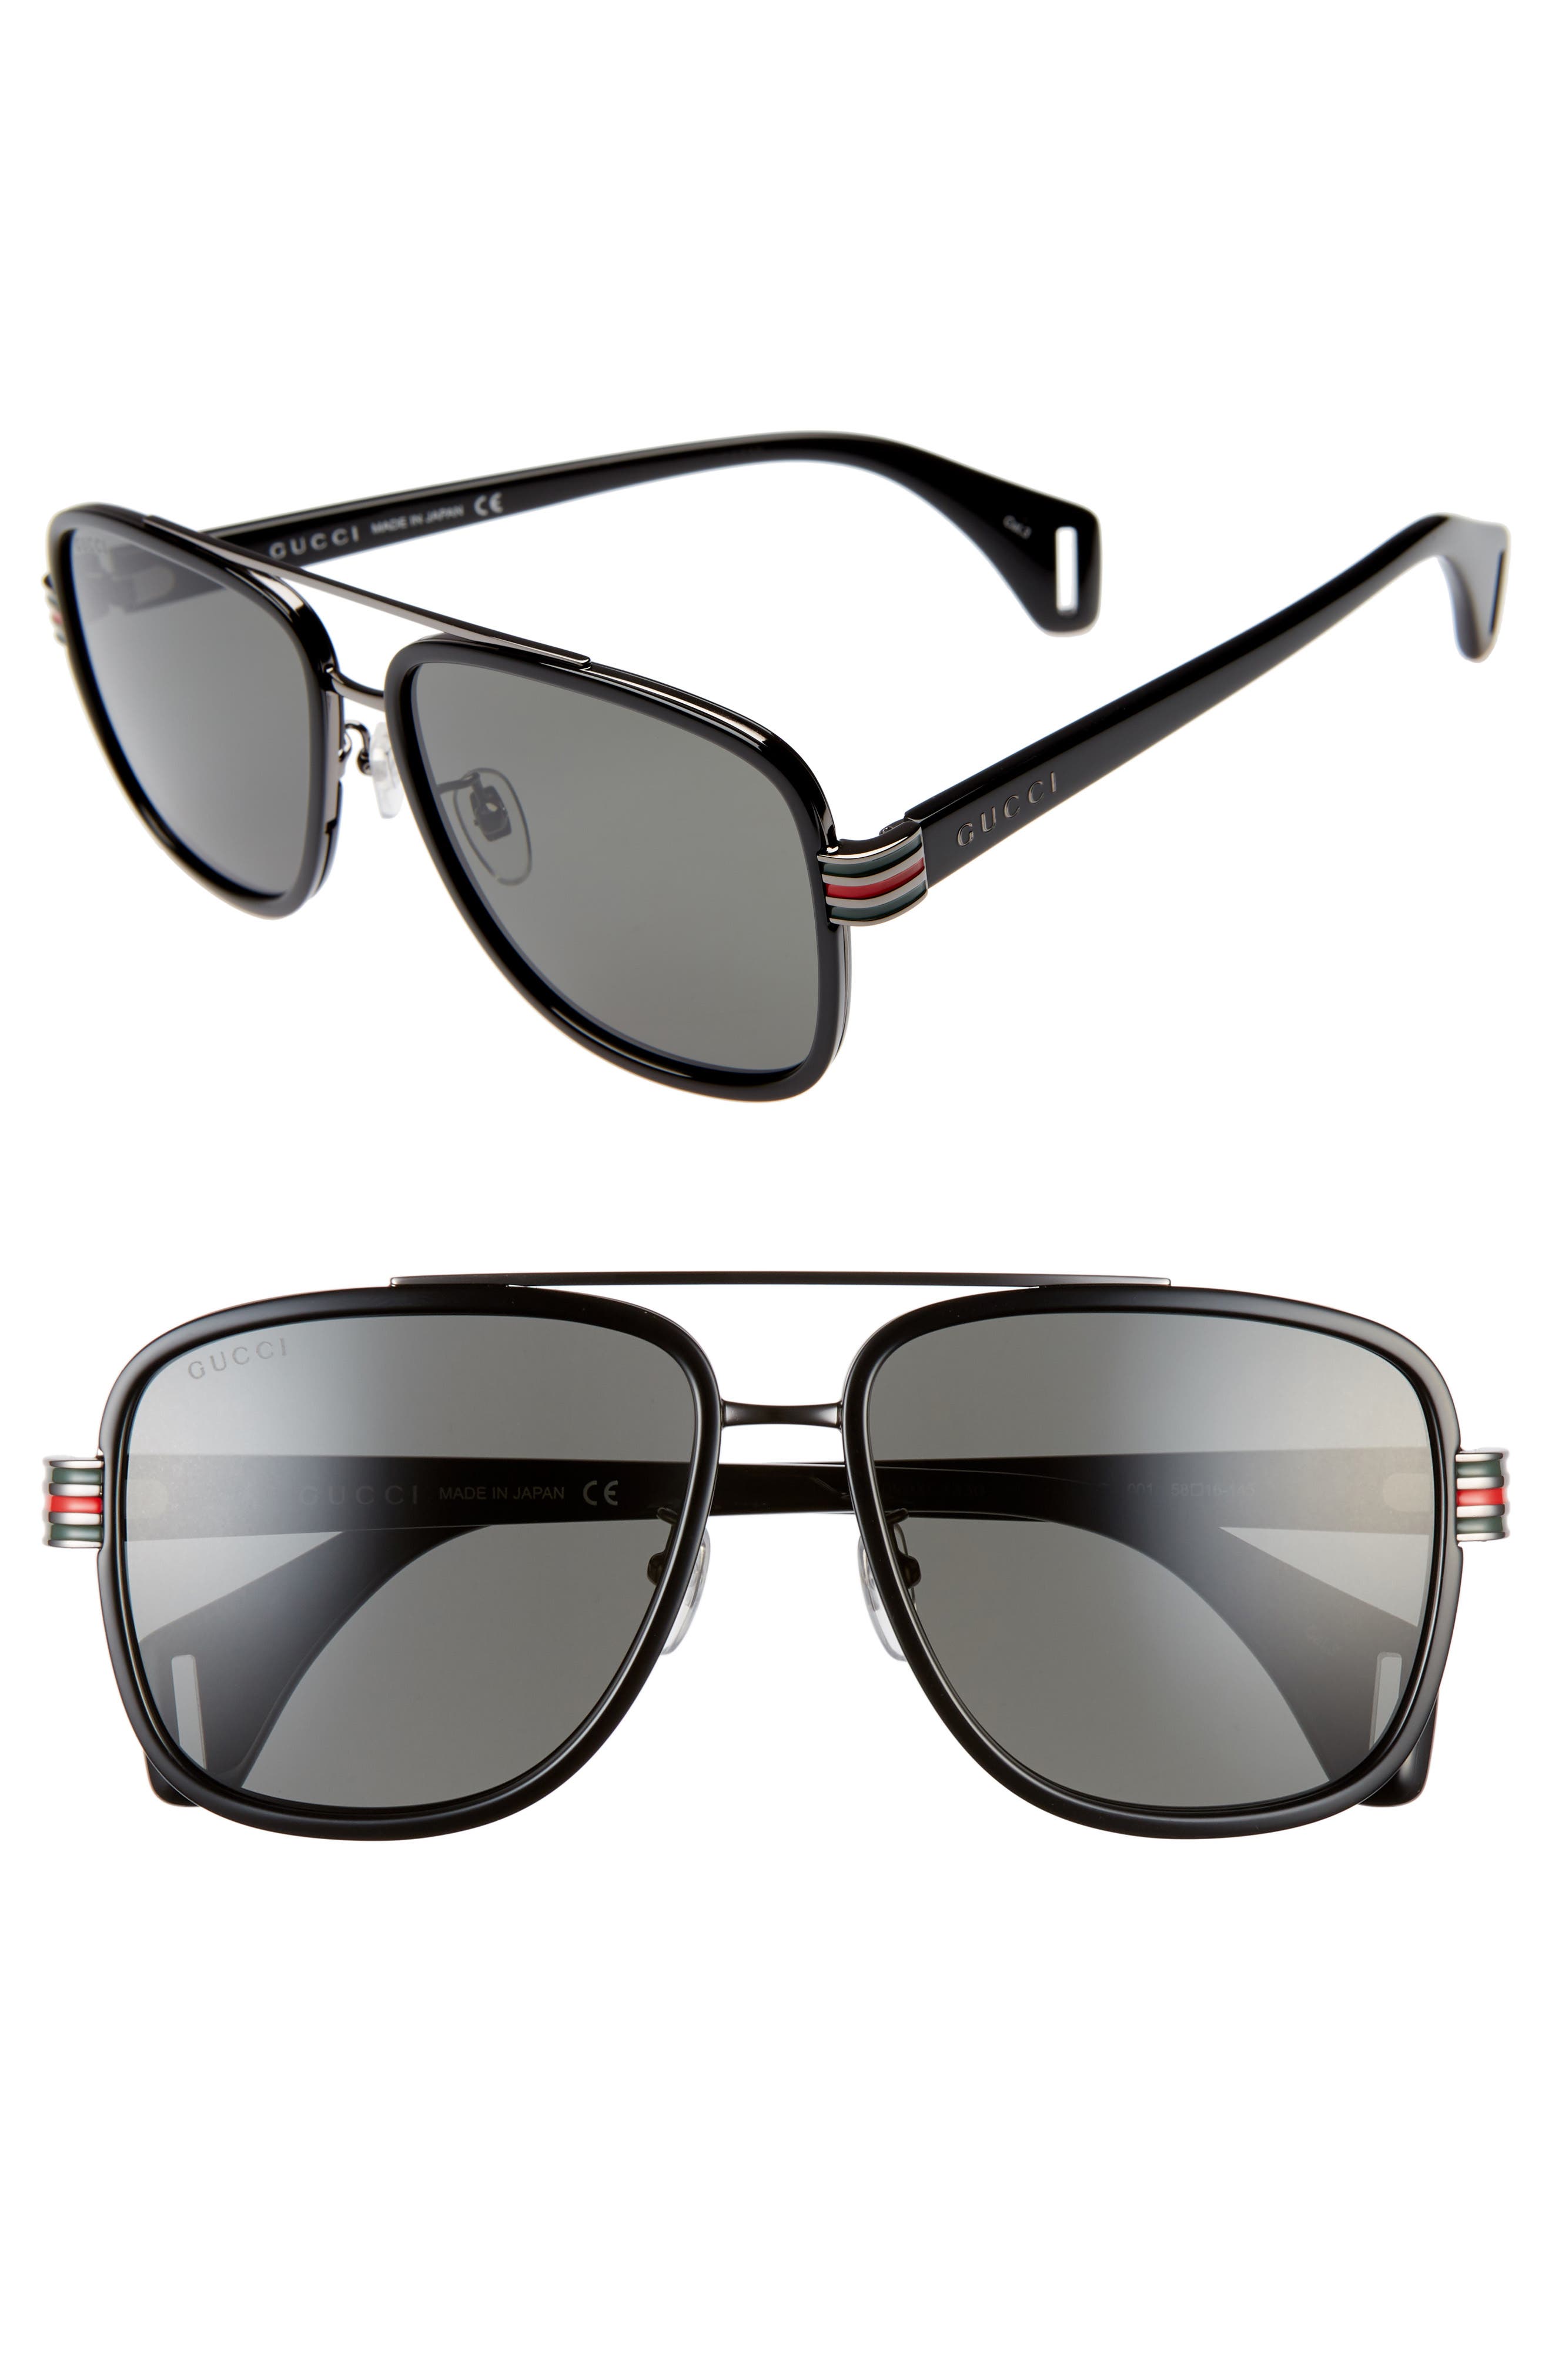 gucci sunglasses men 2019